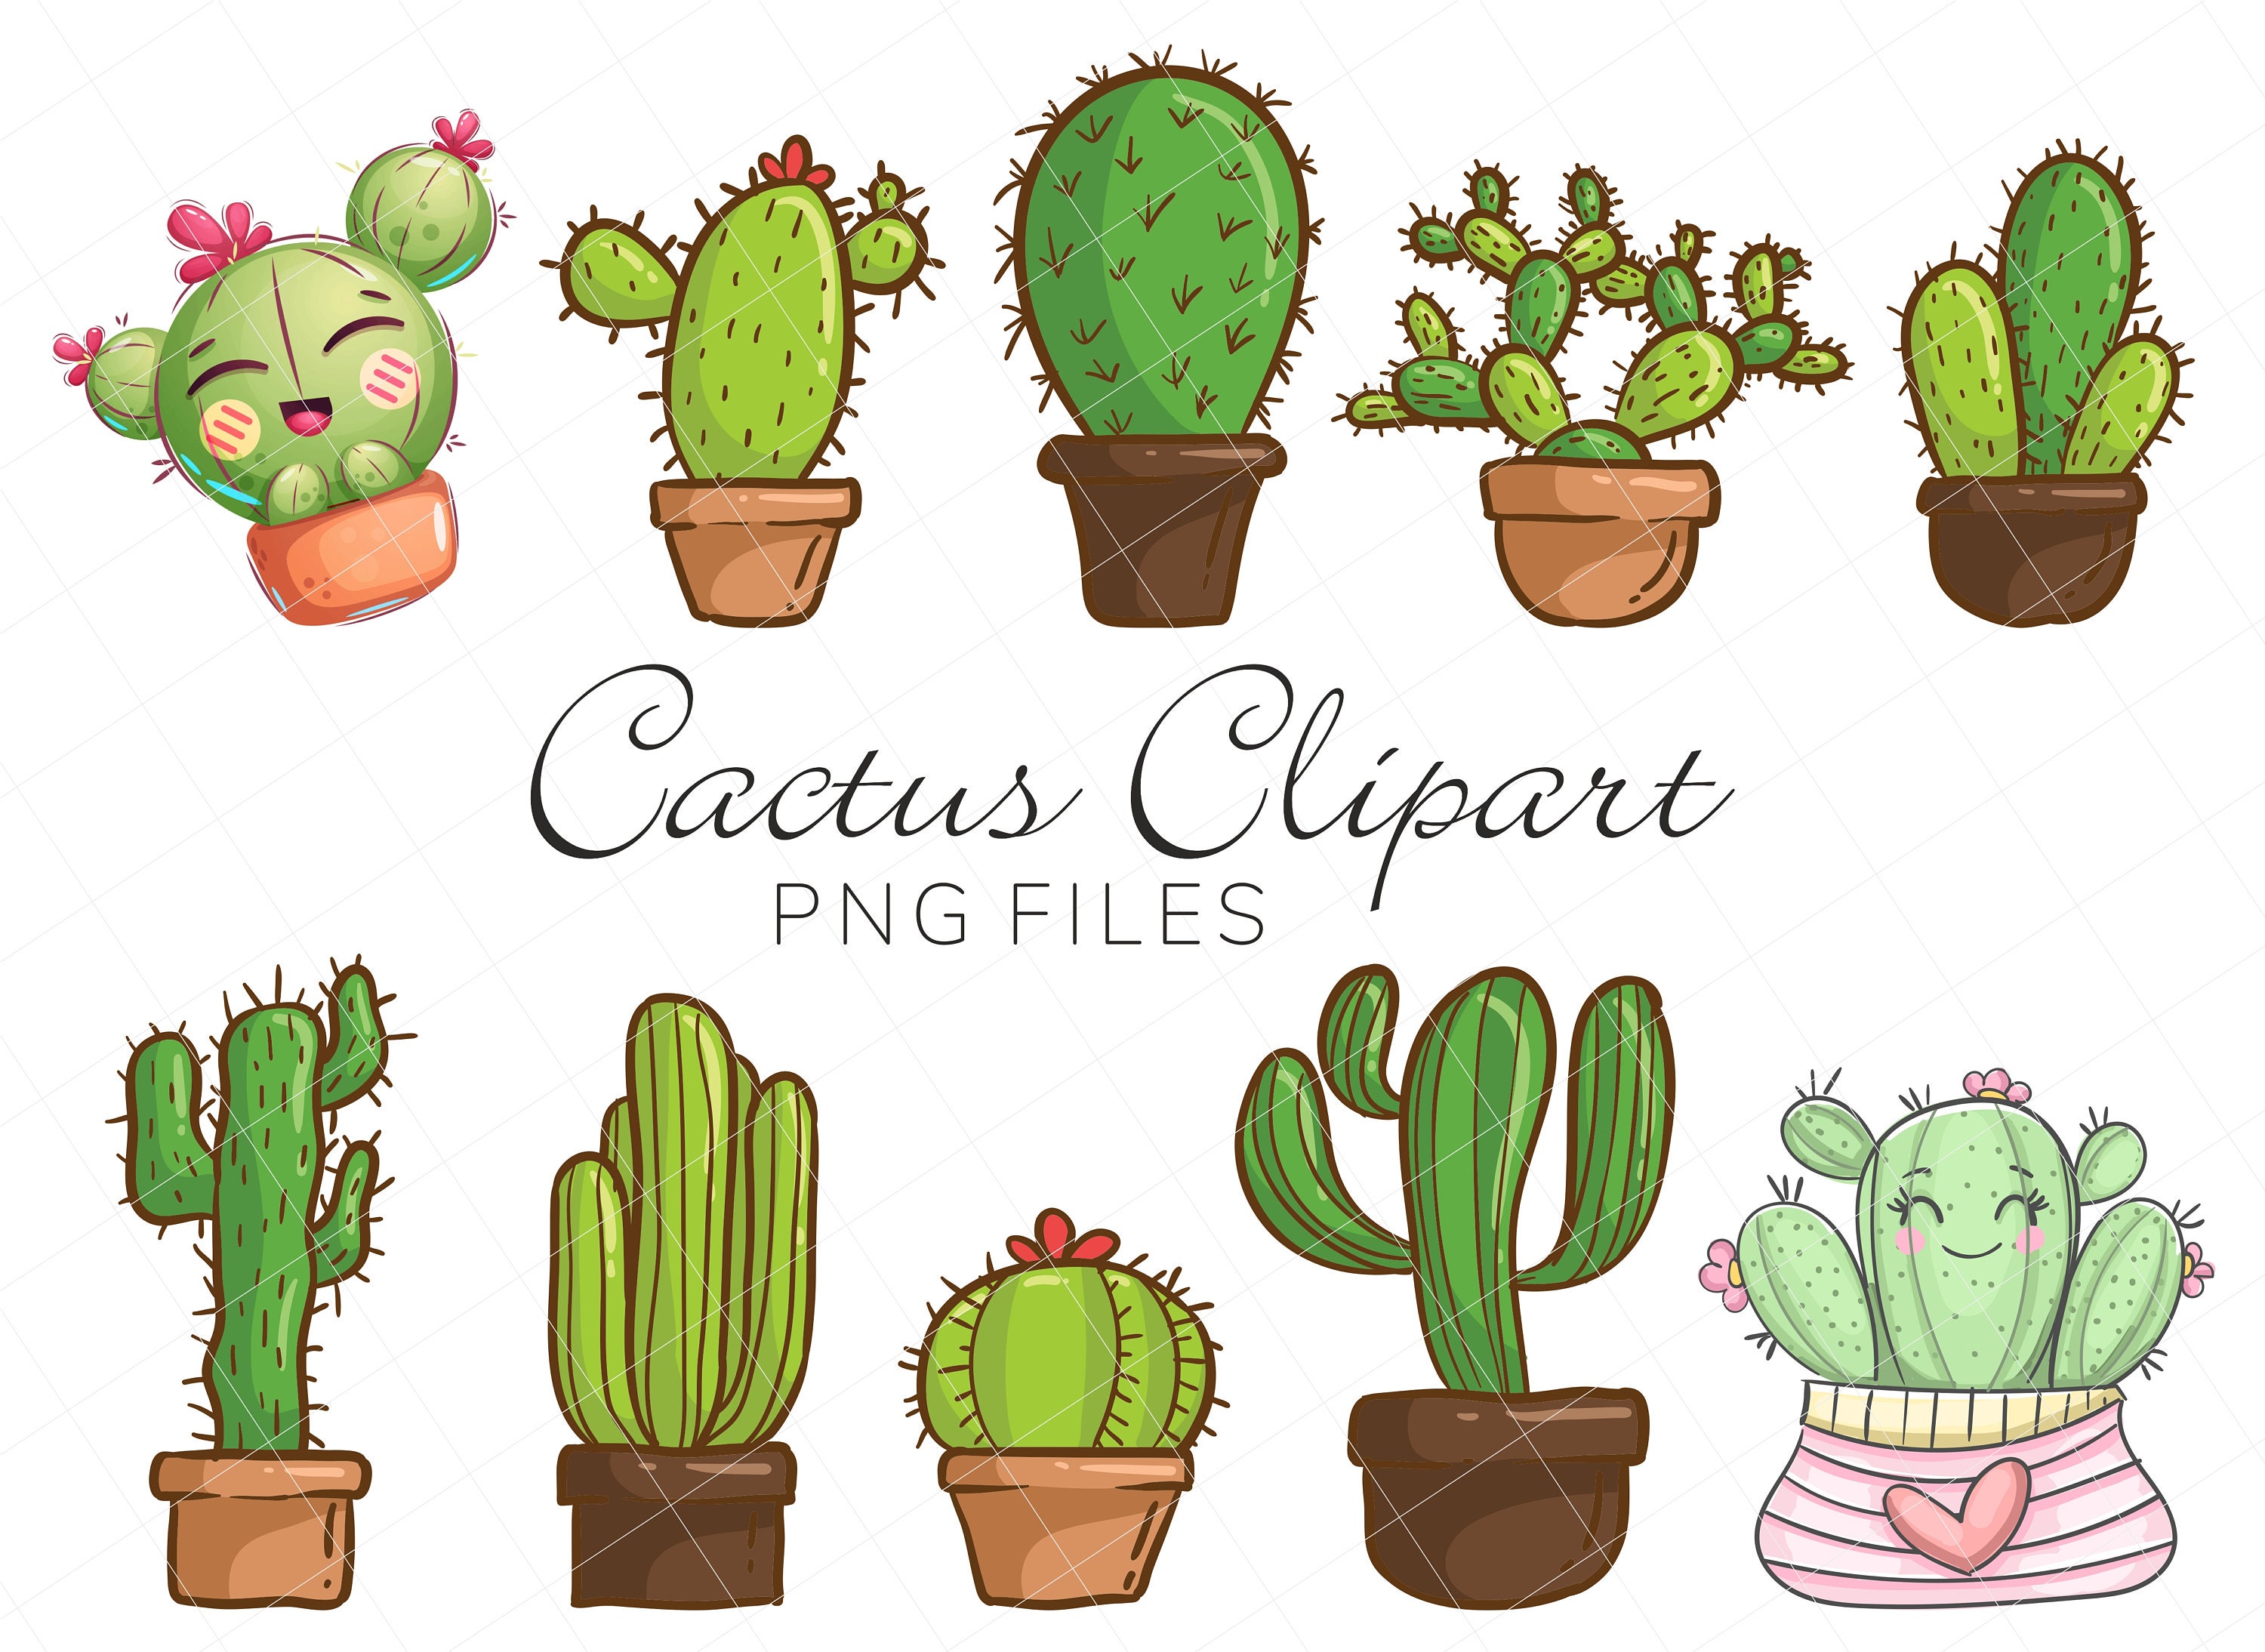 Cactus Clipart Bundle, Cactus Png Files, Cute Cactus Clip Art Set